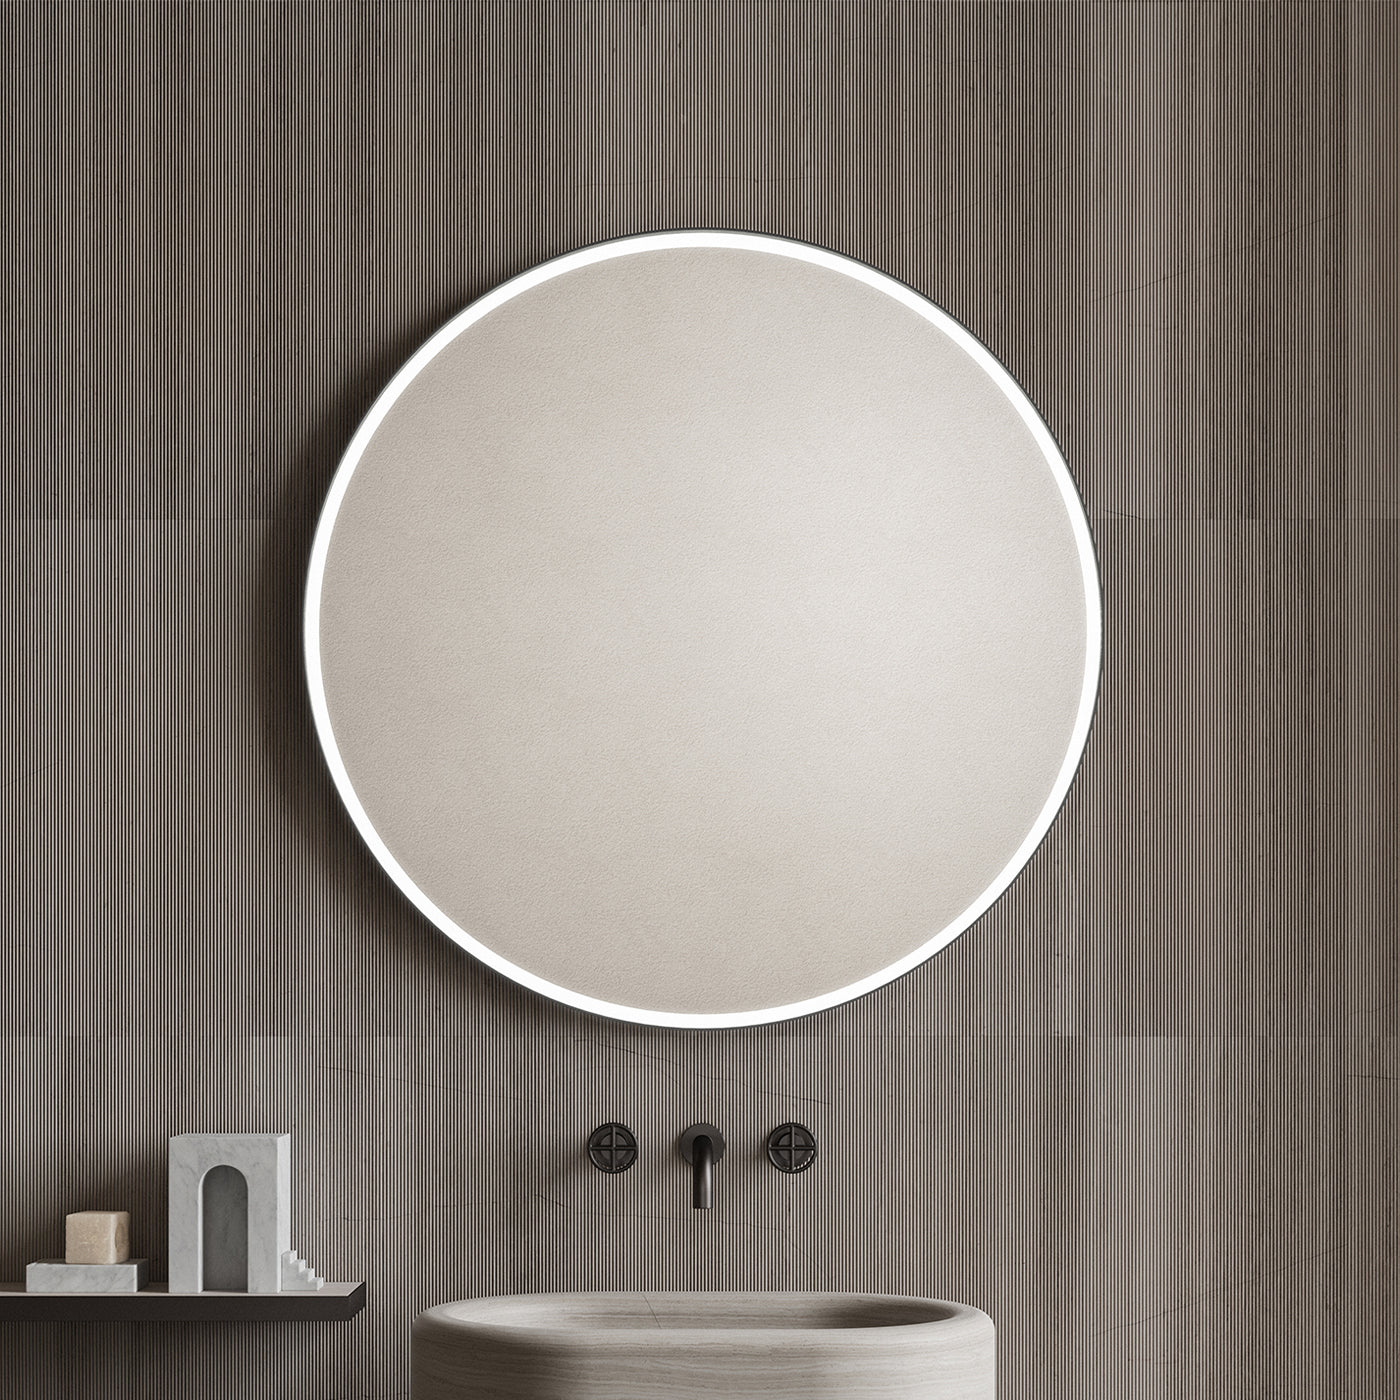 Round Mirari Mirror by Elisa Ossino - Alternative view 5